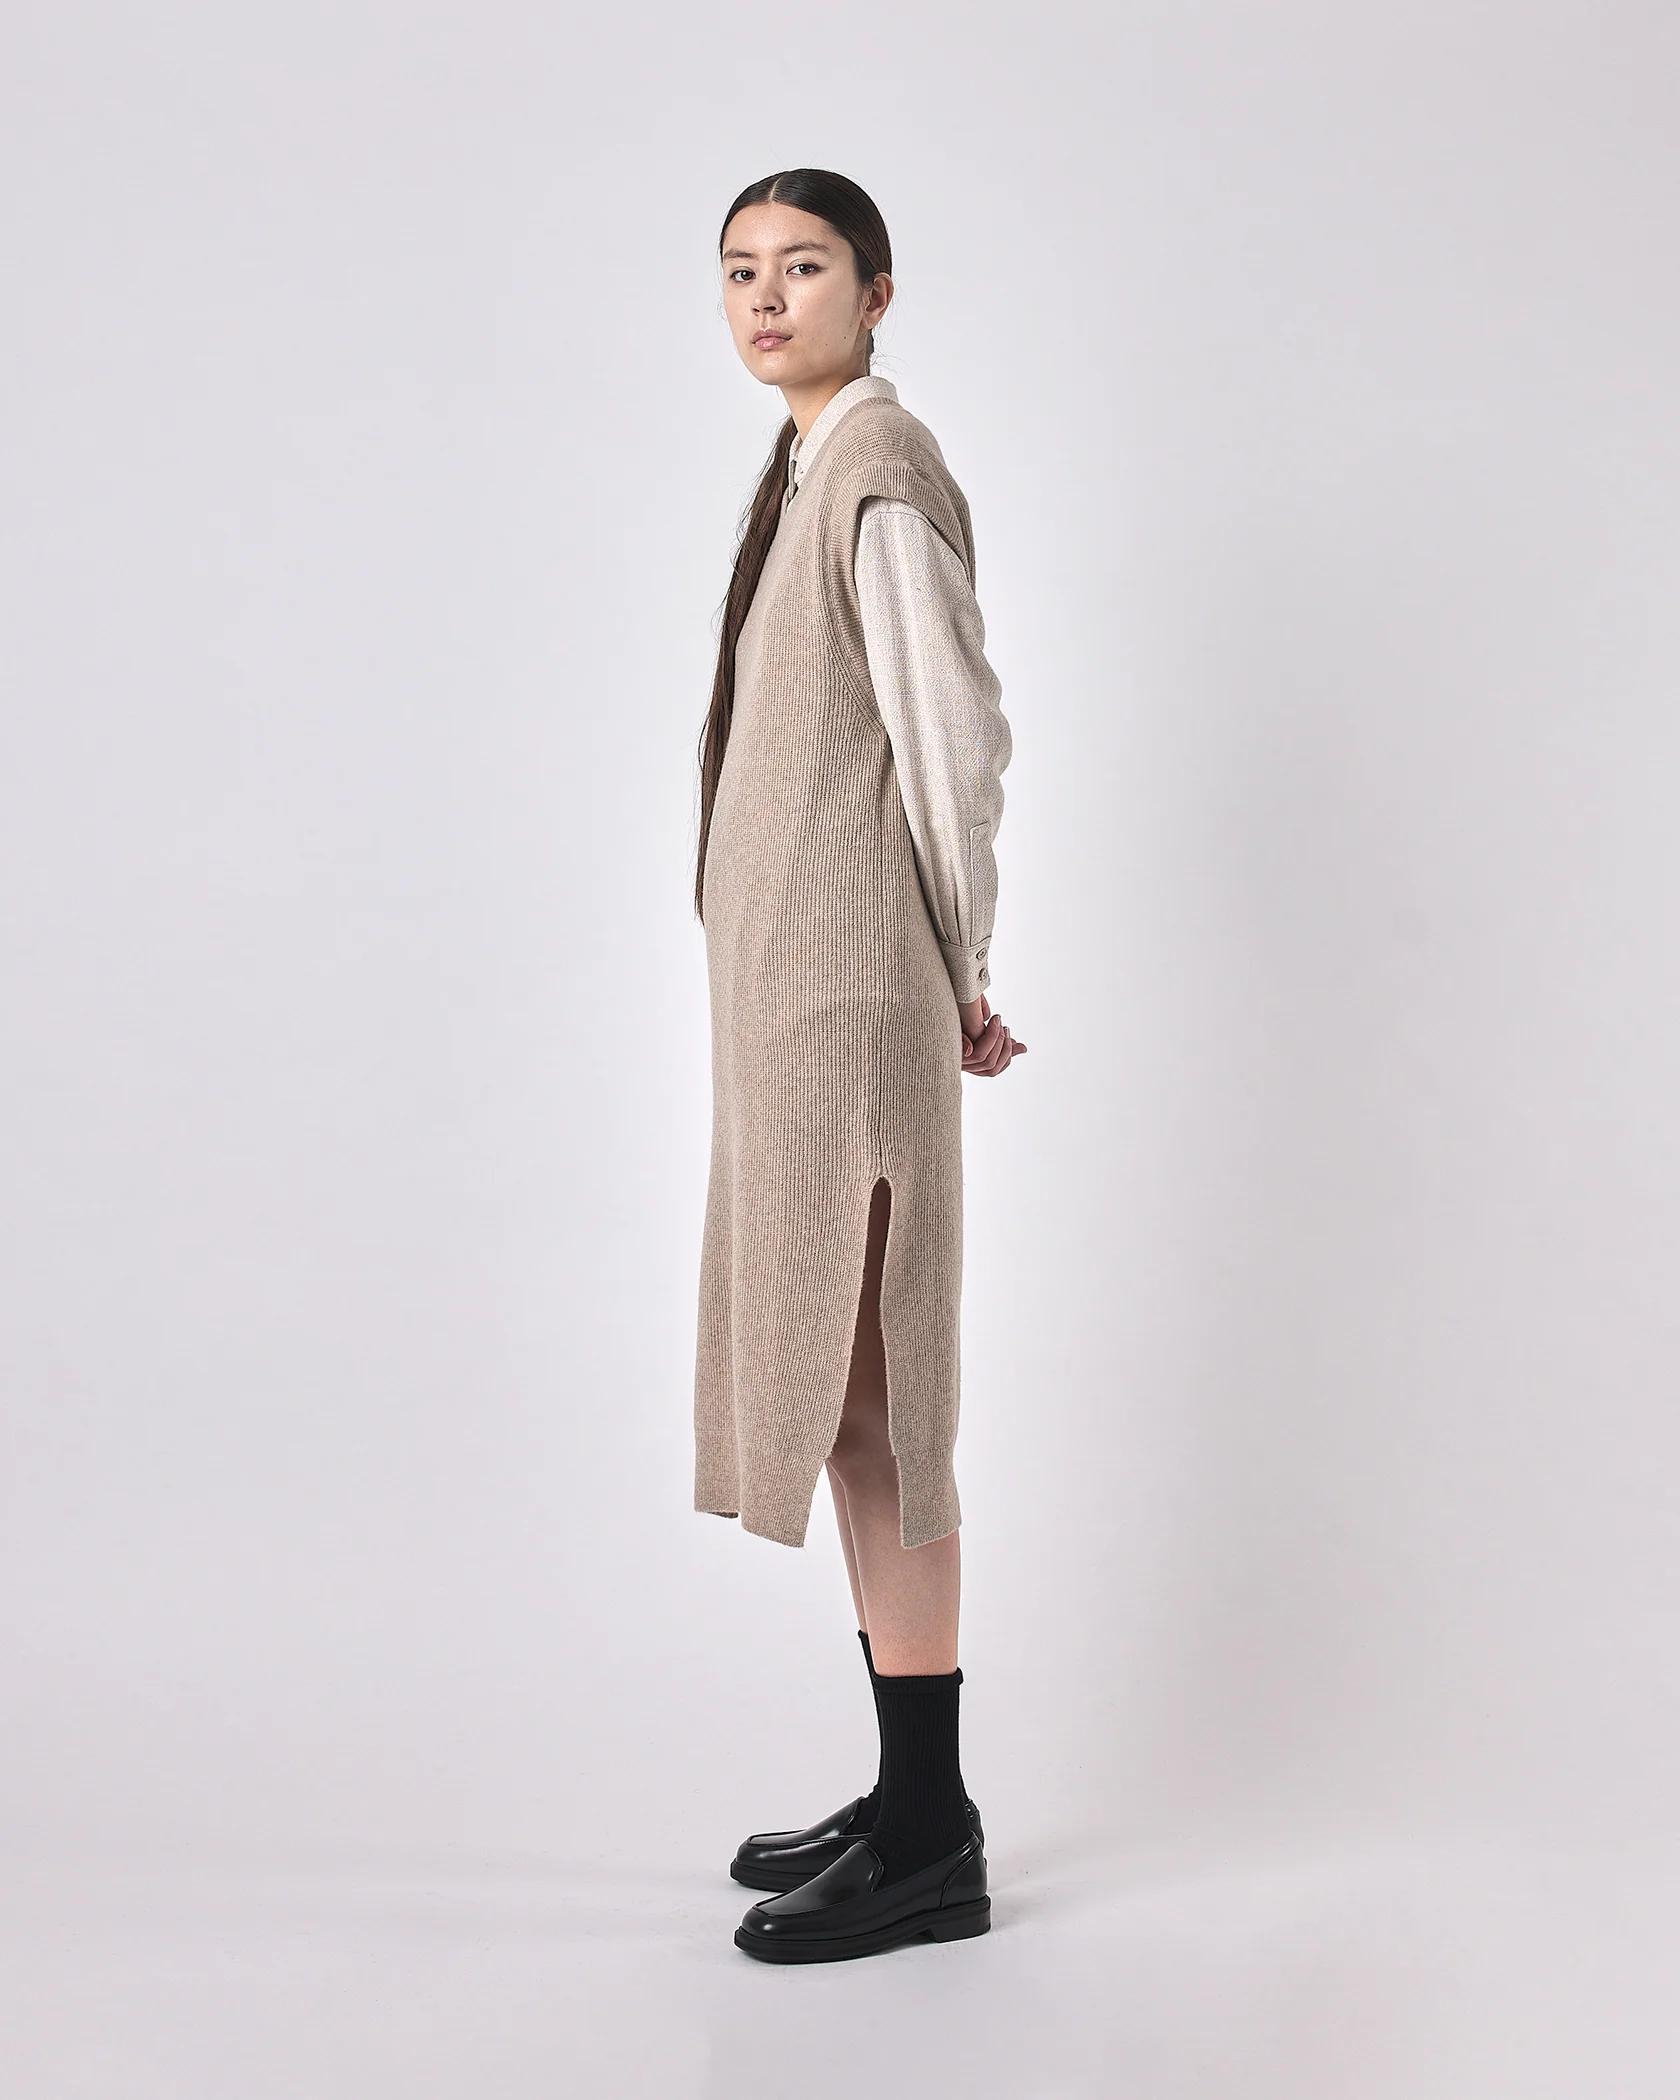 Product Image for Slit Vest Knit Dress, Light Taupe